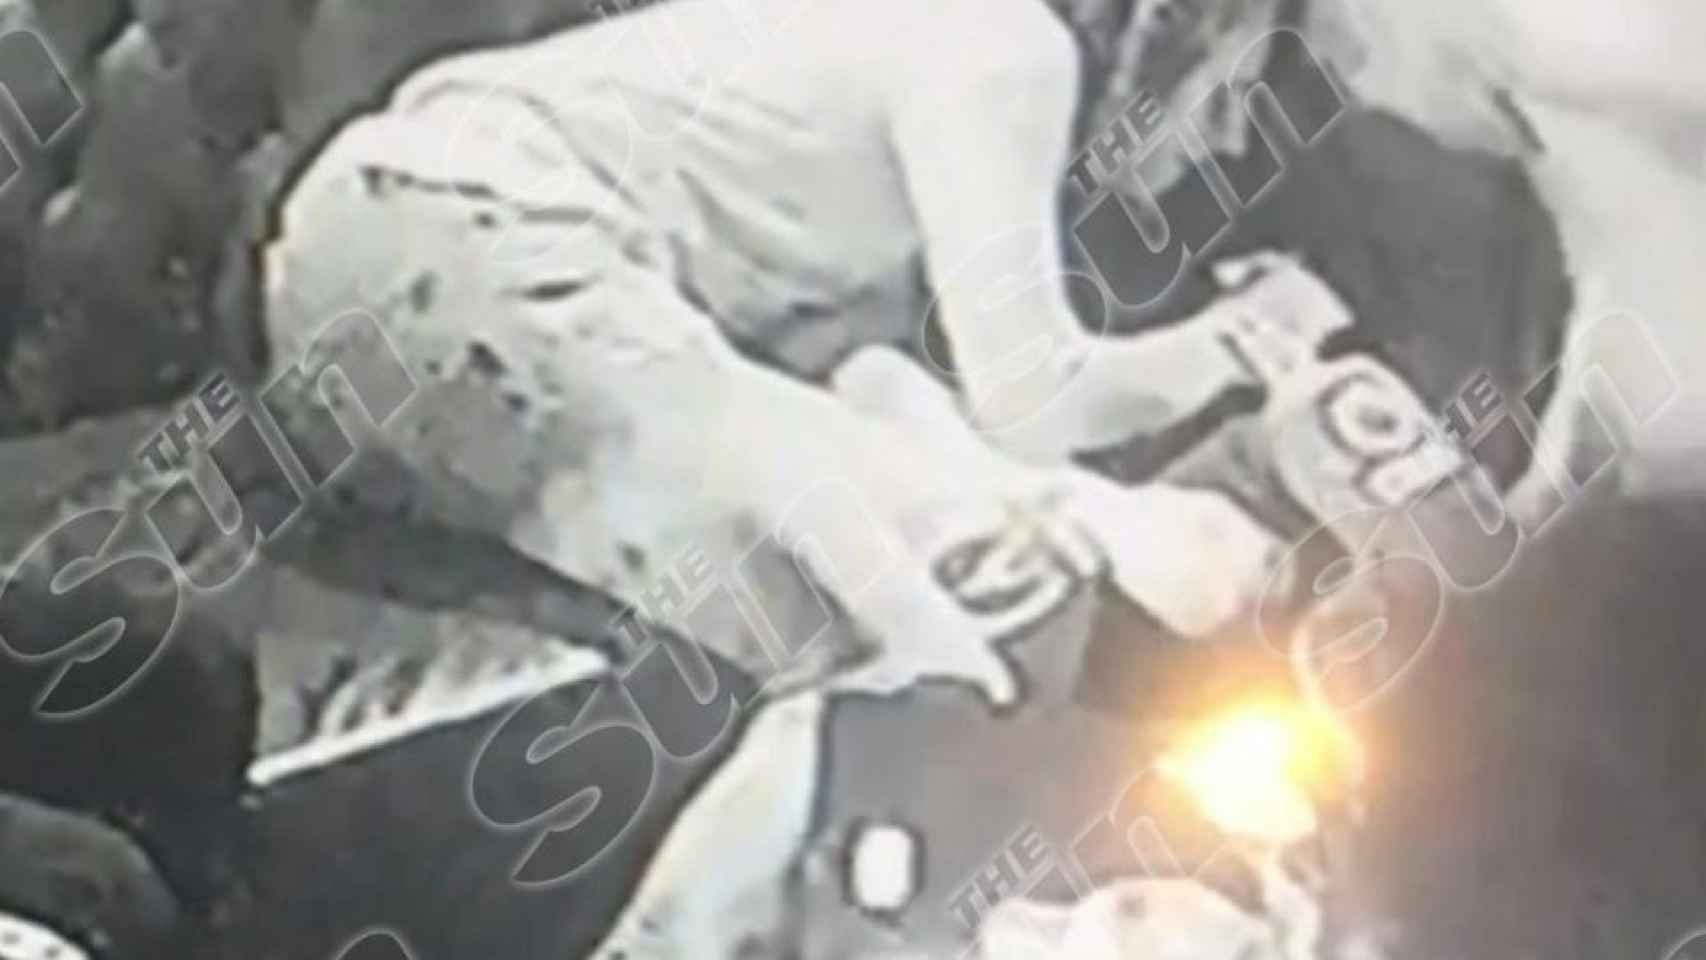 Guendouzi colapsando tras drogarse. Foto: The Sun